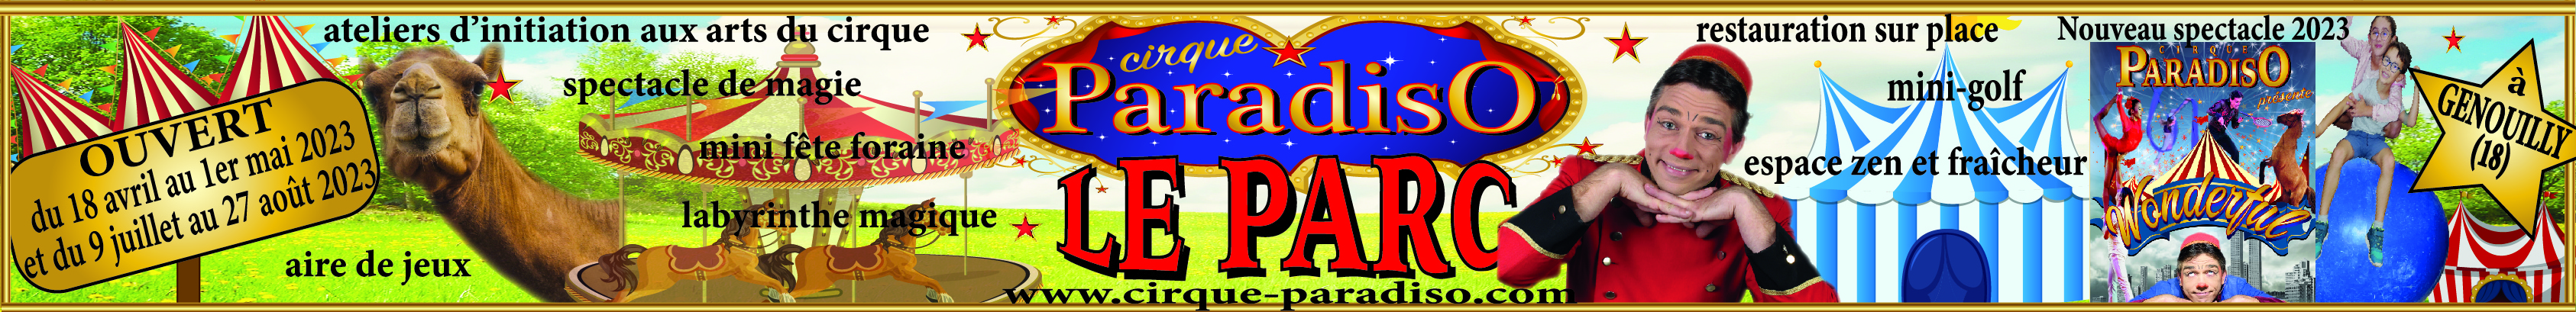 Cirque Paradiso Le Parc Genouilly 2023